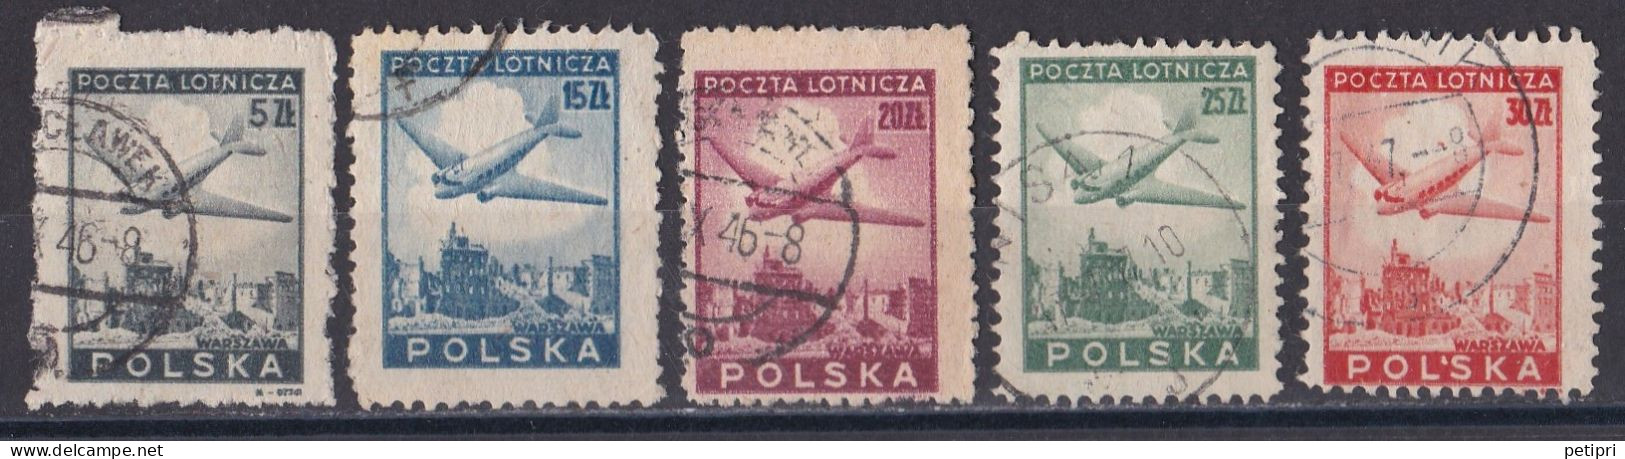 Pologne -  Poste Aérienne  Y&T  N ° 10  12  13  14  15  Oblitérés - Oblitérés